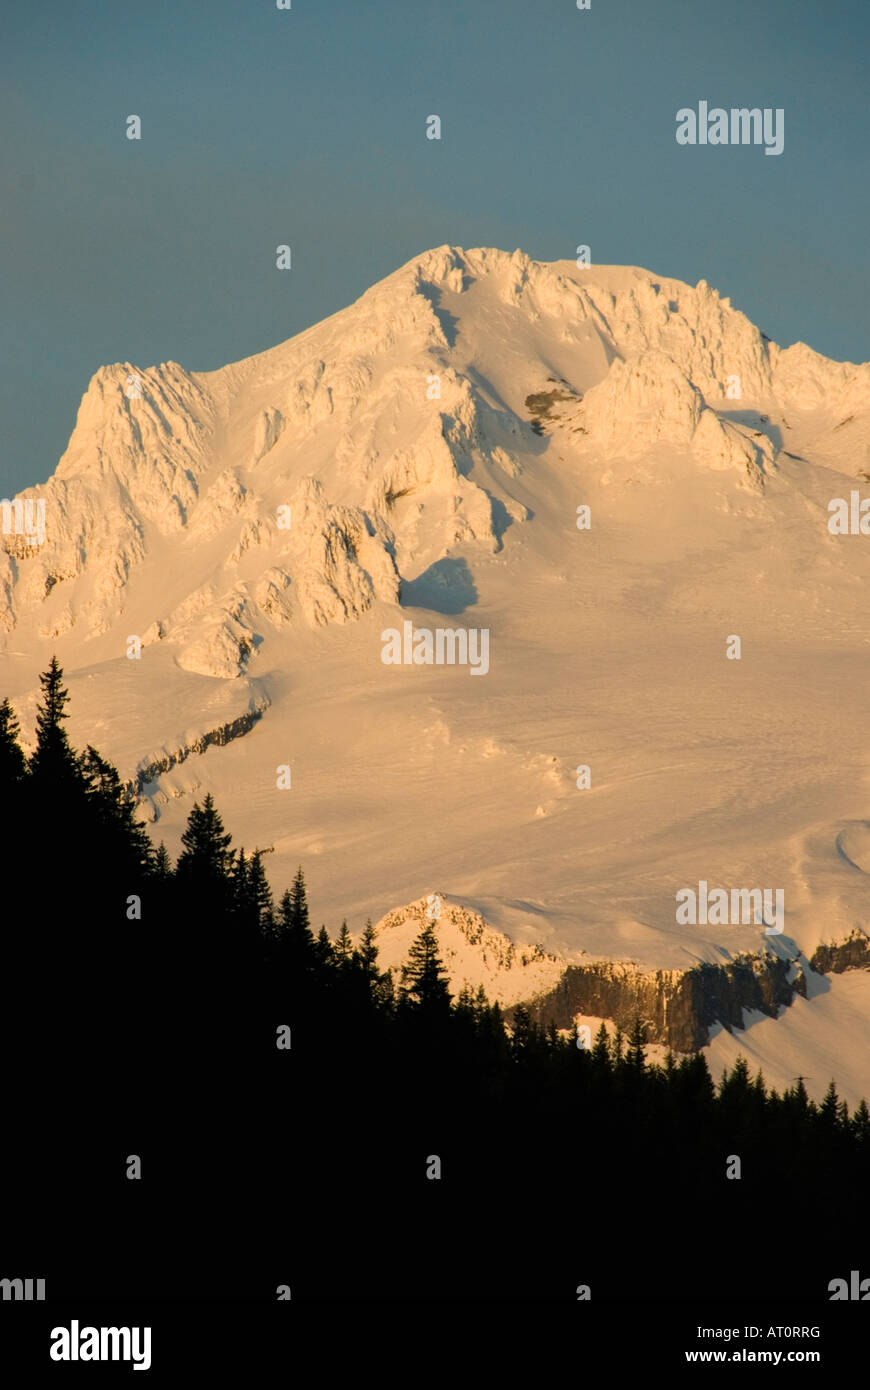 Mt. Hood at sunset, winter, 11,237 feet high. Cascade Mountains, Oregon USA Stock Photo